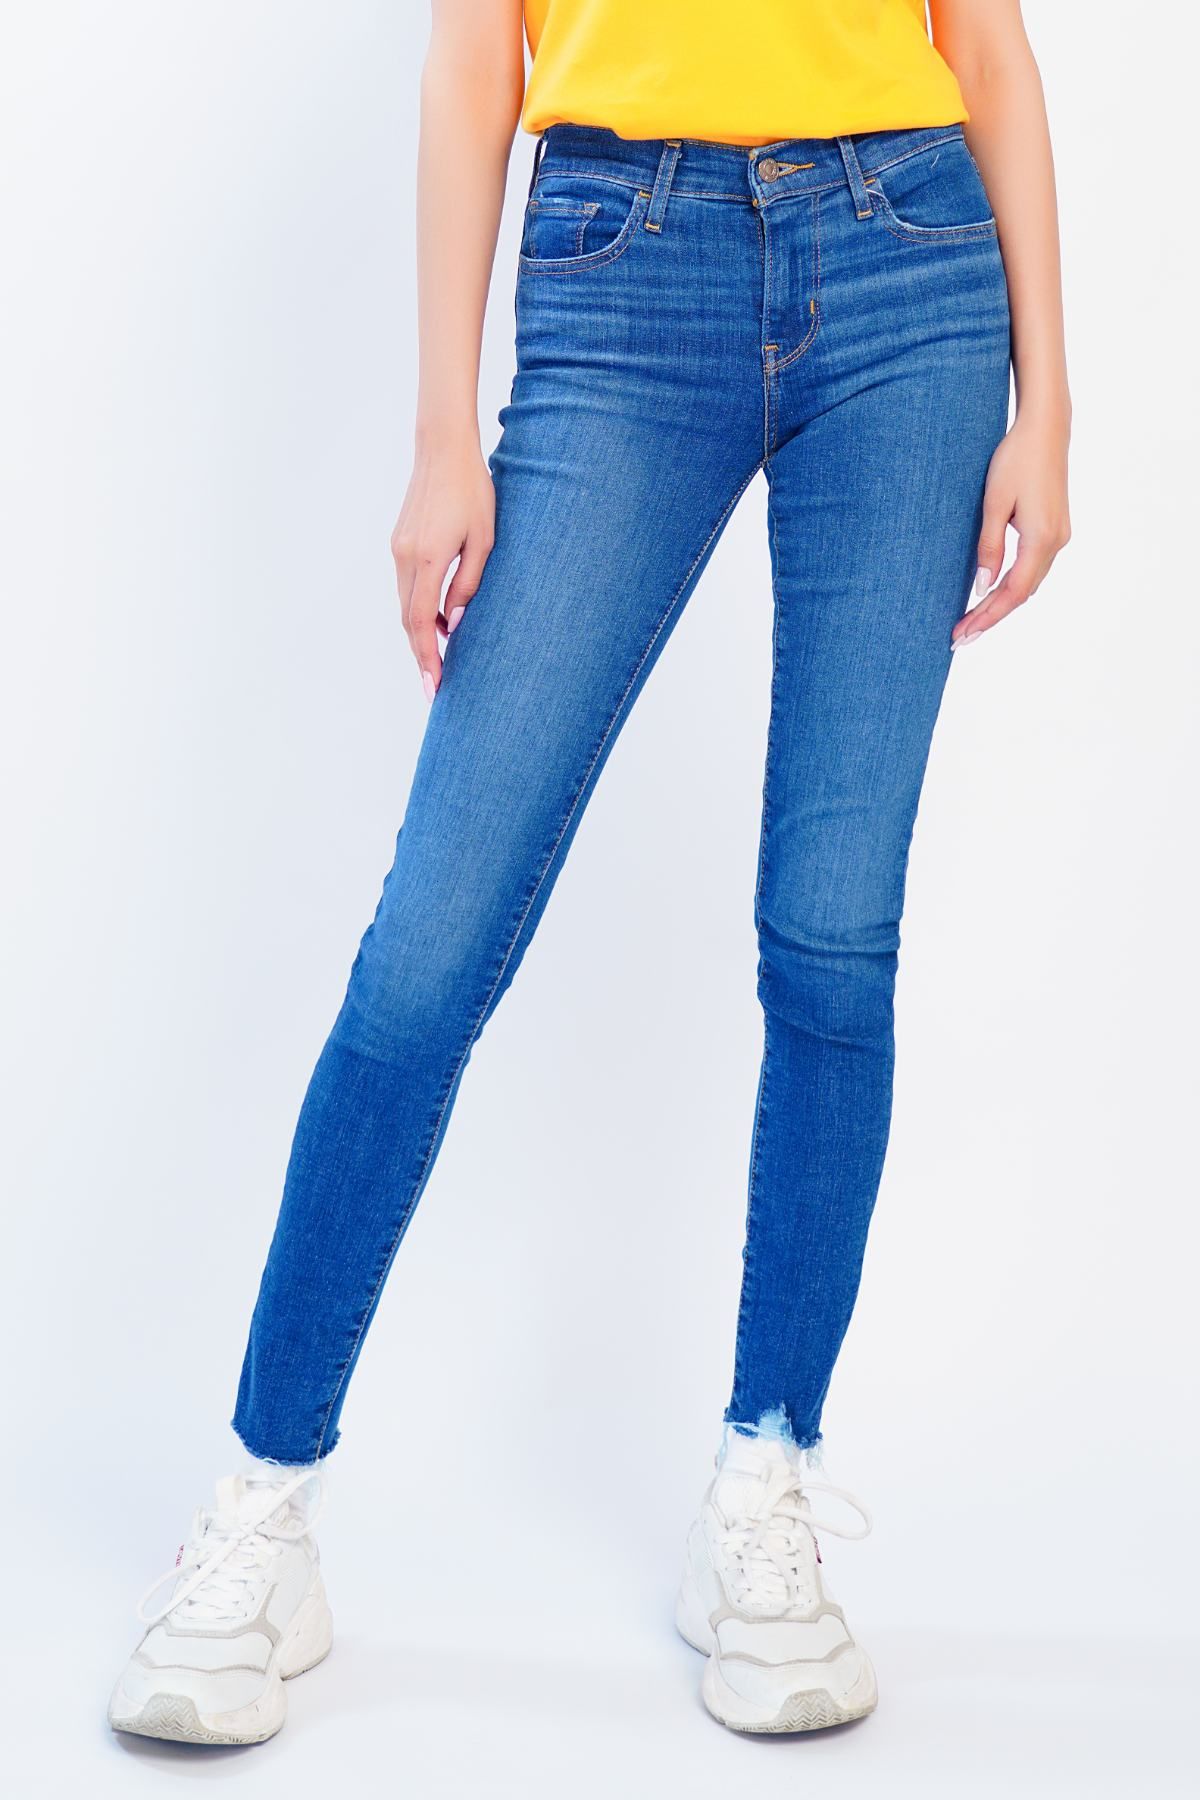 Levi's Â® 710 Super Skinny Quebec Wonder Women Jeans|